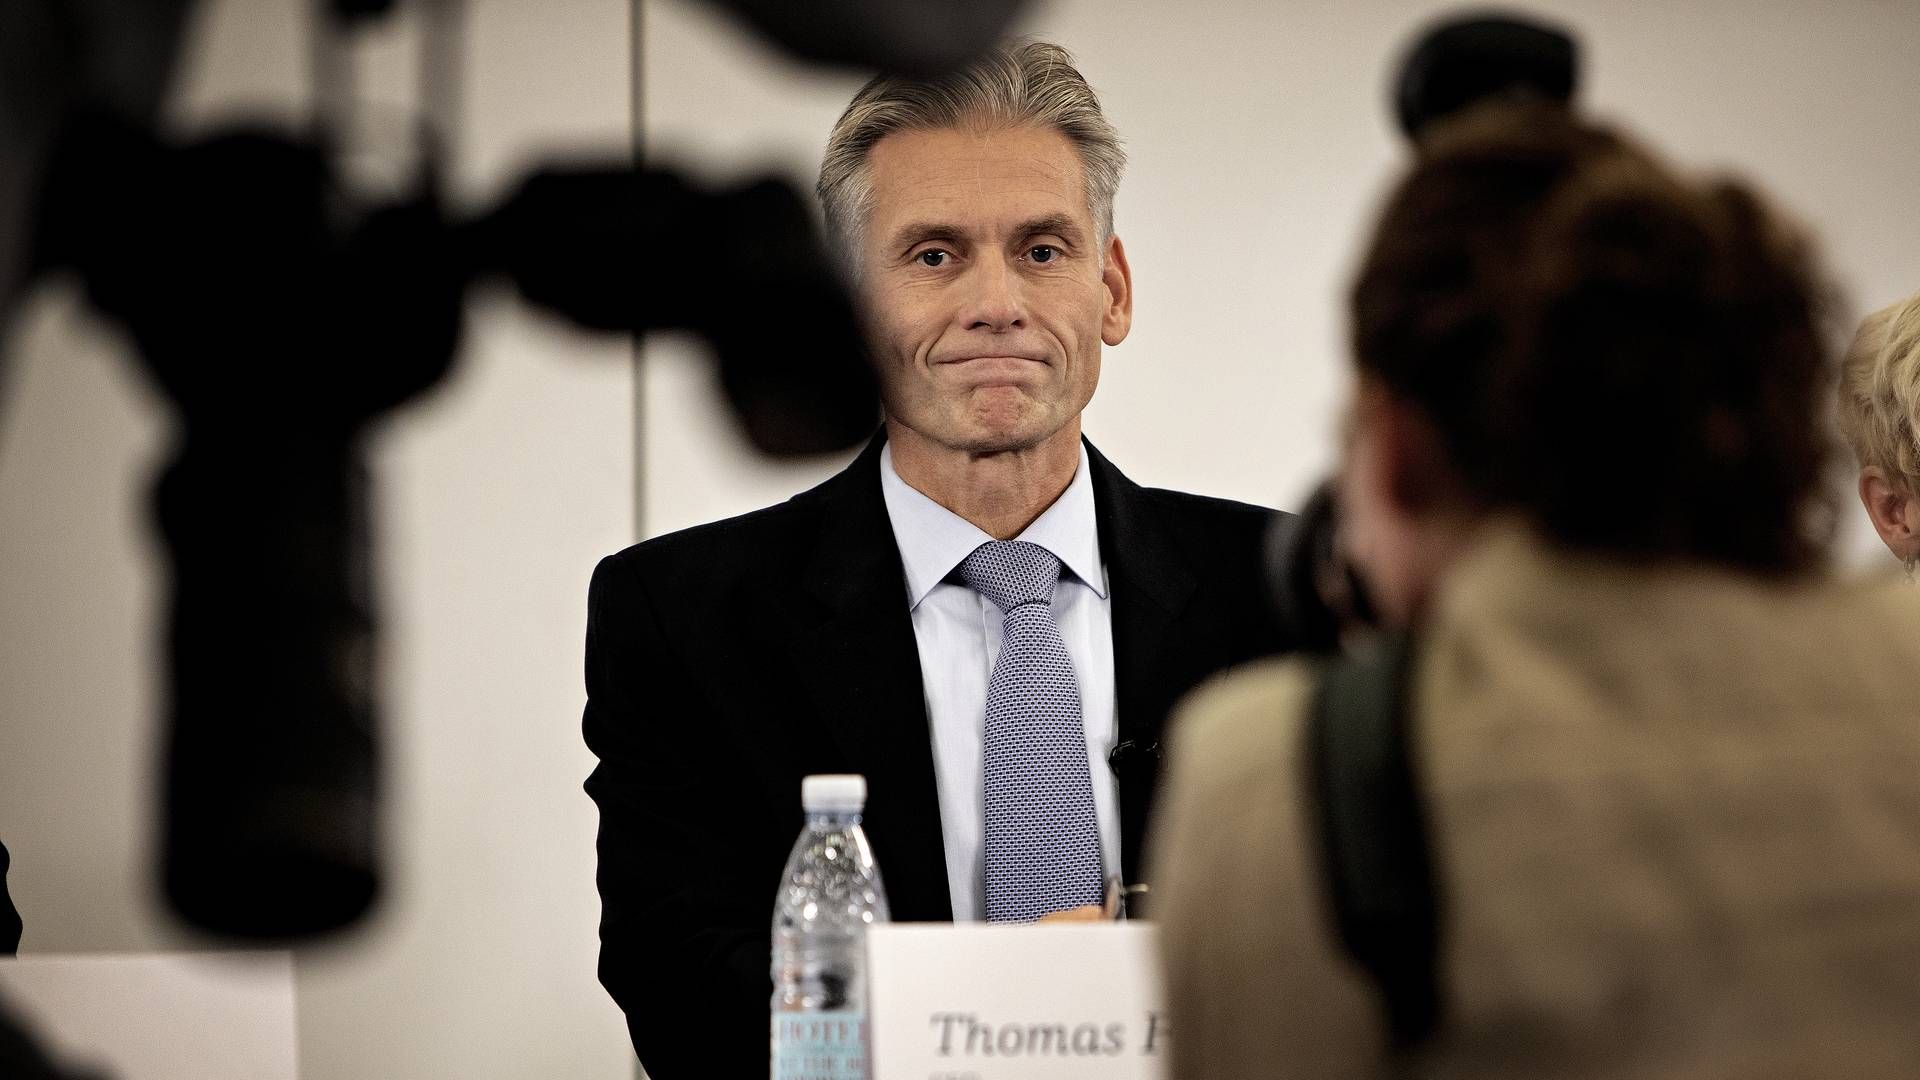 Thomasd Borgen, tidligere konsernsjef i Danske Bank. | Foto: Martin Lehmann/Politiken